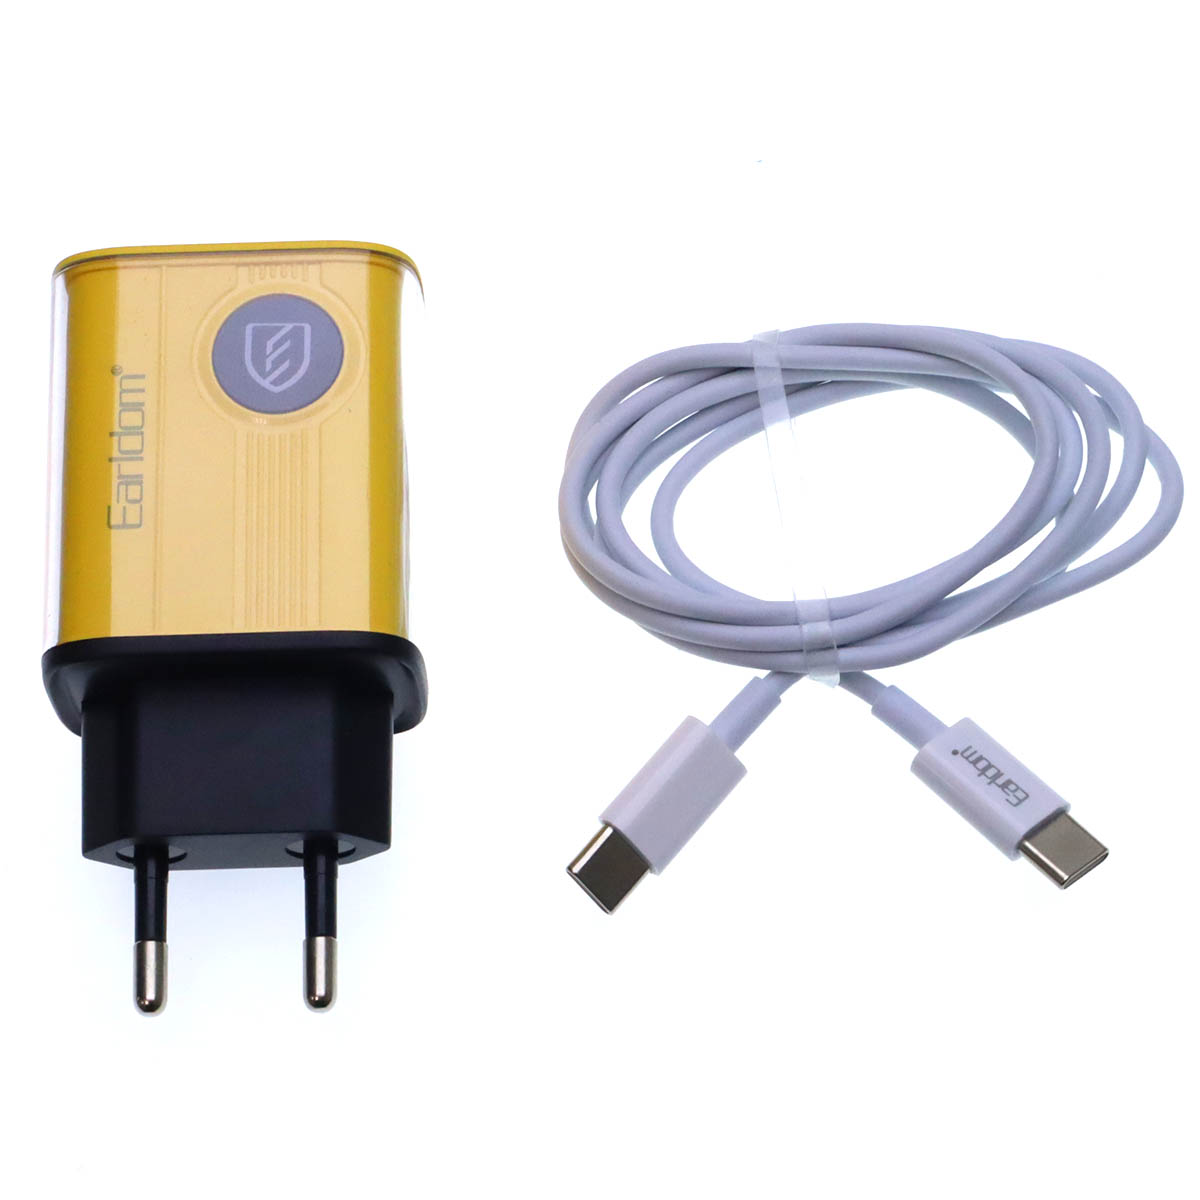 СЗУ (Сетевое зарядное устройство) EARLDOM ES-EU40 с кабелем USB Type C на USB Type C, QC3.0 15W, PD20 20W, длина 1 метр, цвет желтый